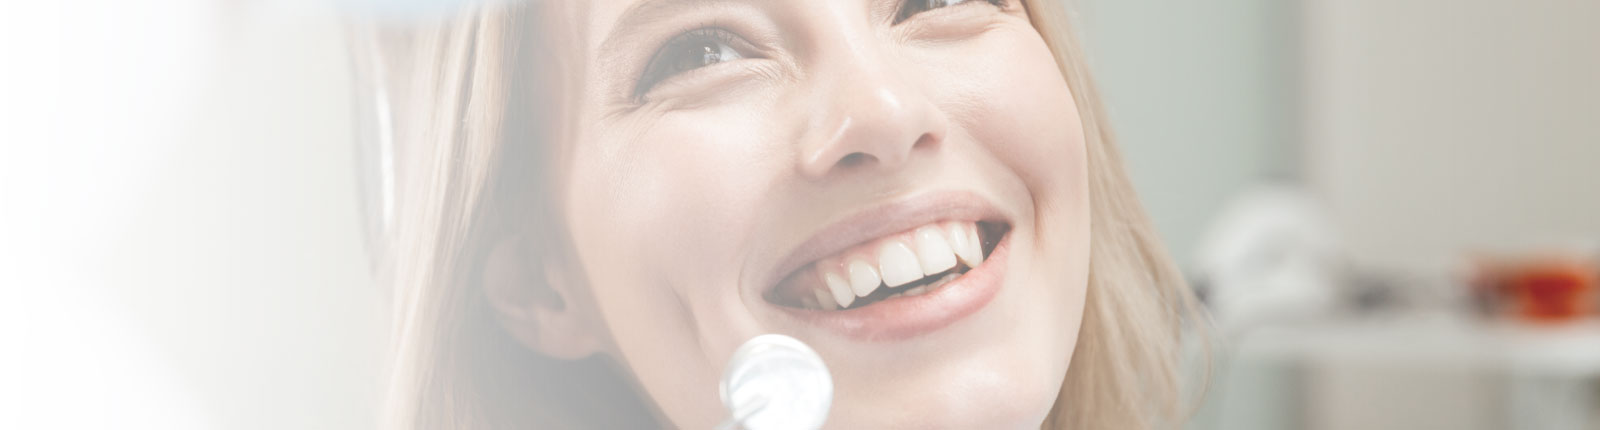 dental client smiling